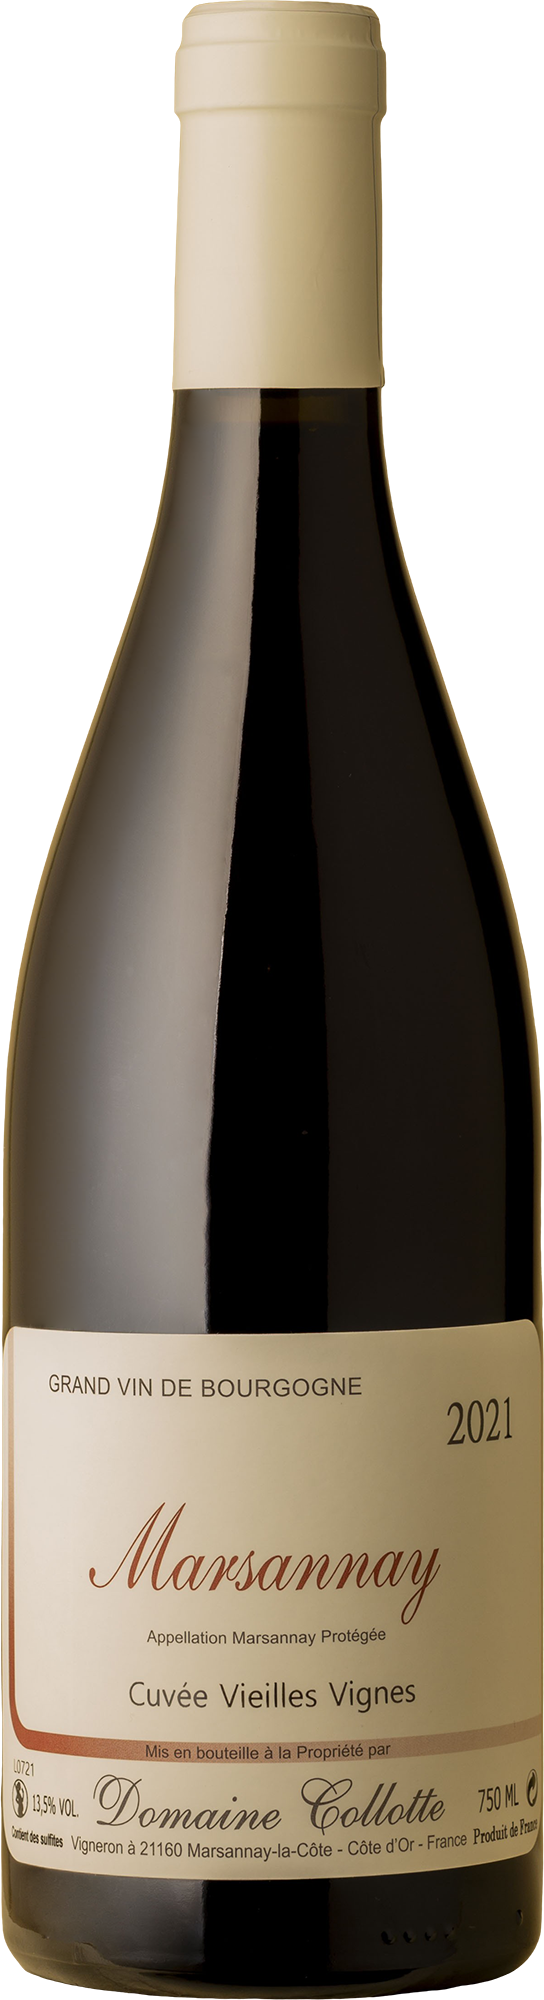 Domaine Collotte - Marsannay Vieilles Vignes Pinot Noir 2021 Red Wine